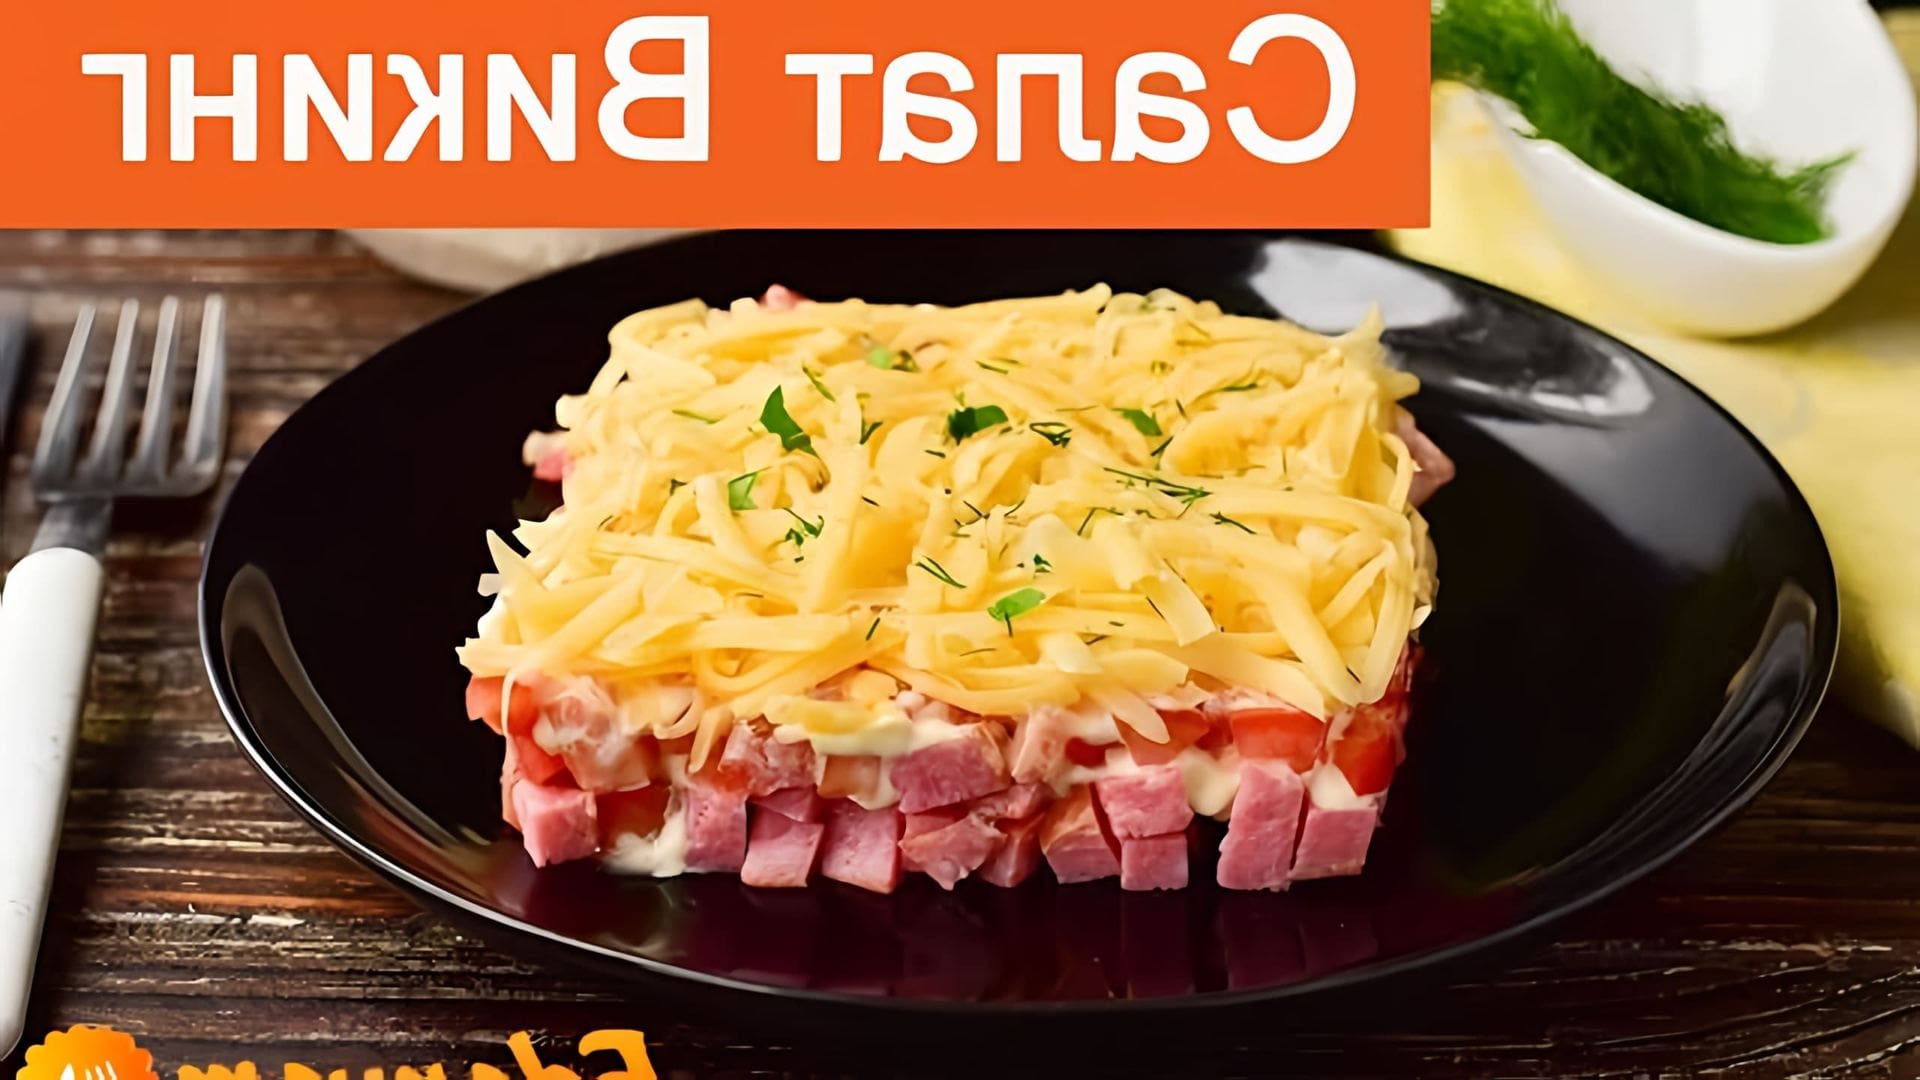 В этом видео демонстрируется рецепт салата "Викинг" с копченой колбасой и сыром